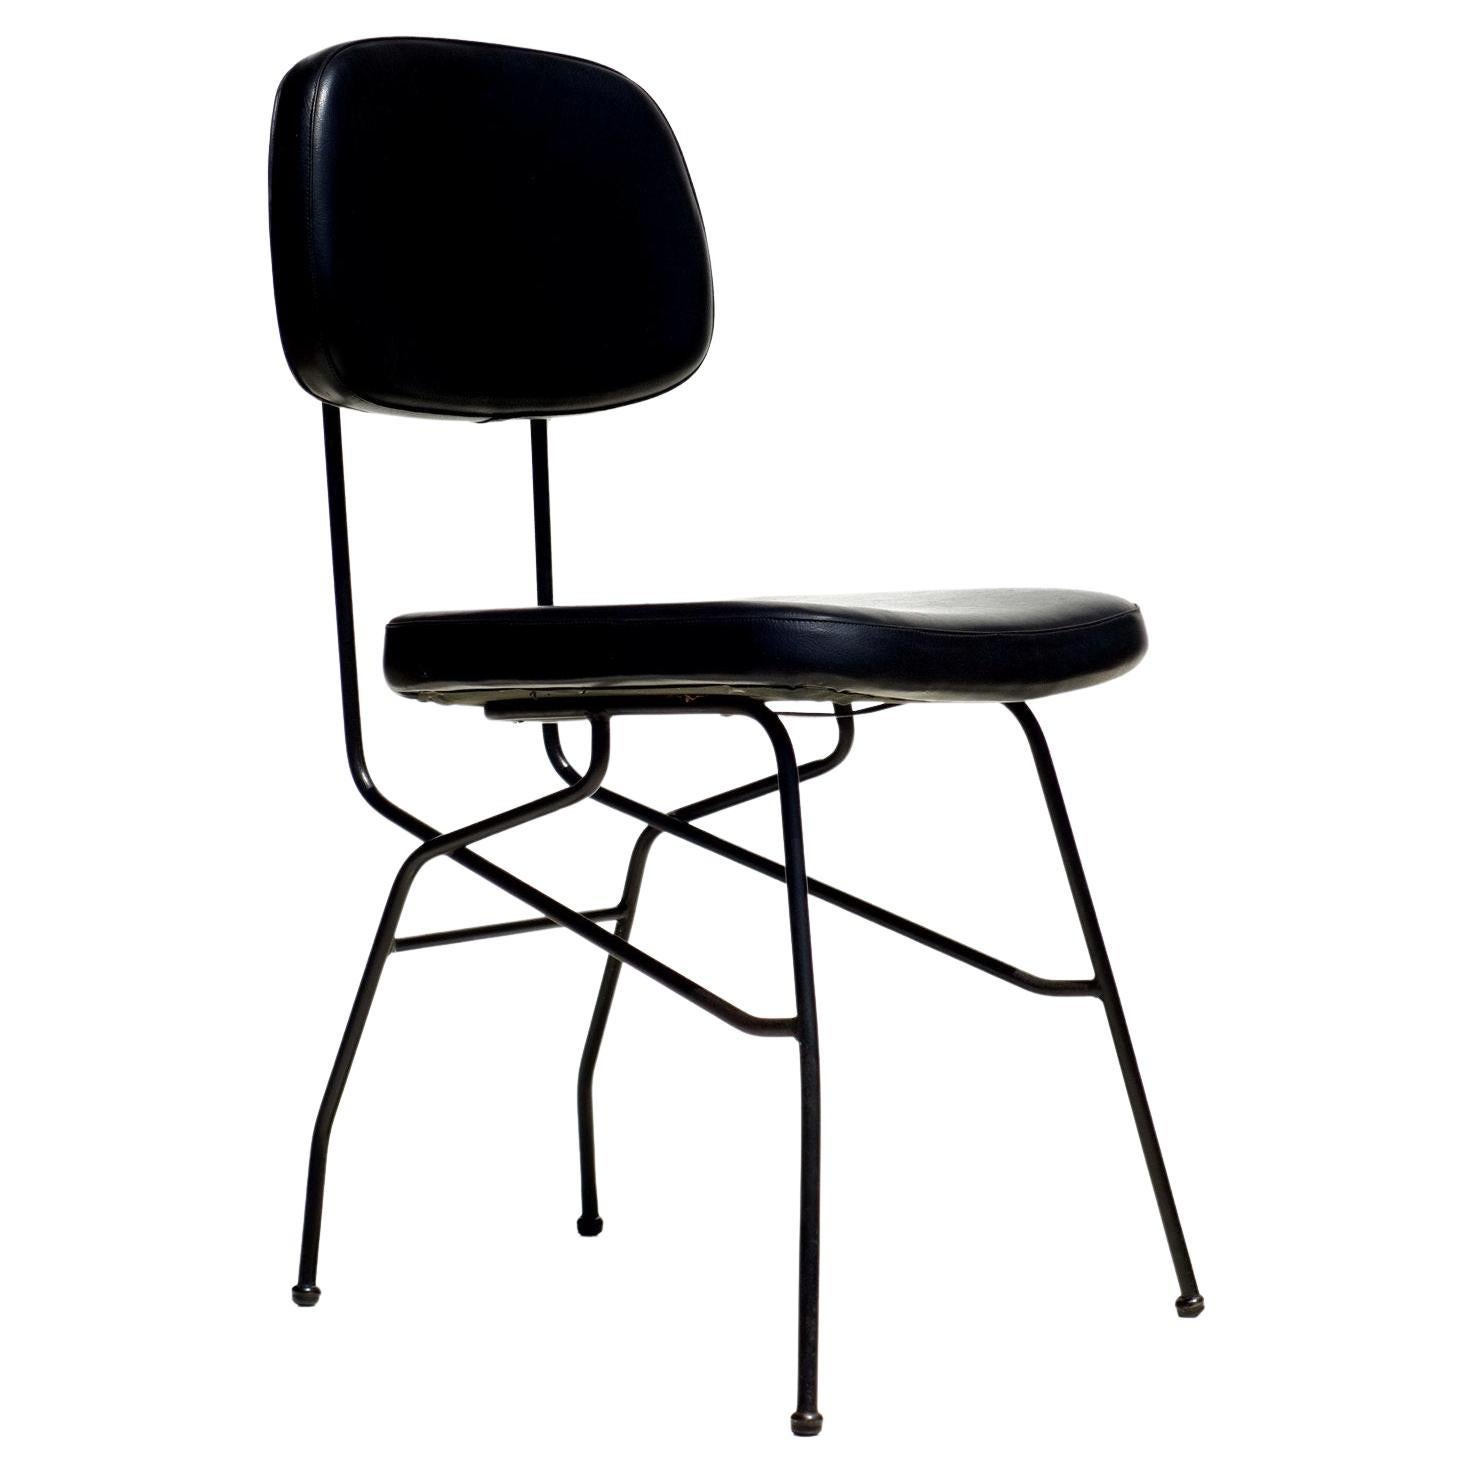 1950er Jahre von Gastone Rinaldi 
für RIMA midcentury

Paar Stühle 
schwarzer Himmel und schwarzes Metall.